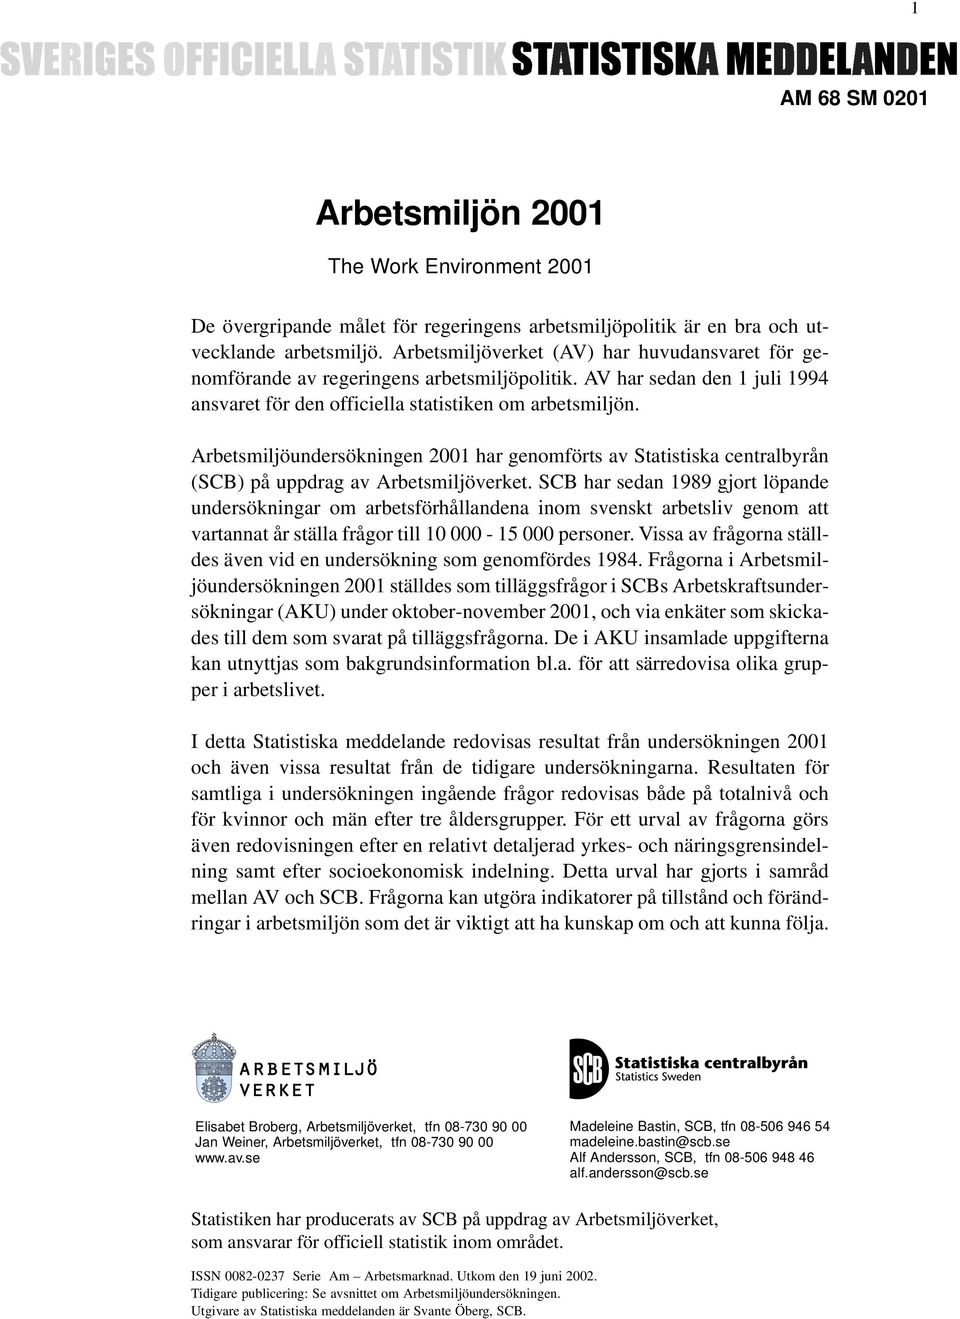 Arbetsmiljöundersökningen 2001 har genomförts av Statistiska centralbyrån (SCB) på uppdrag av Arbetsmiljöverket.